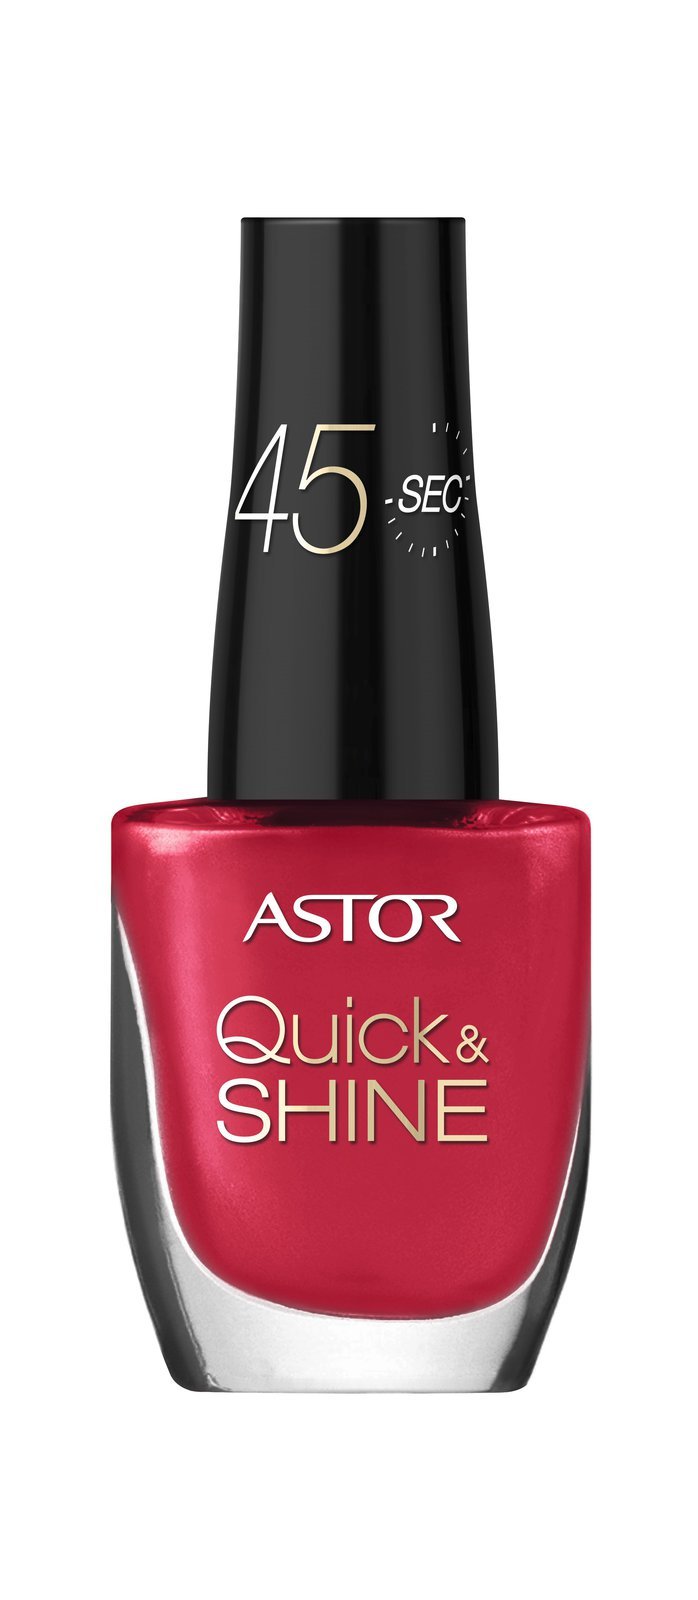 Lak na nehty Quick and Shine, Astor, 99 Kč.